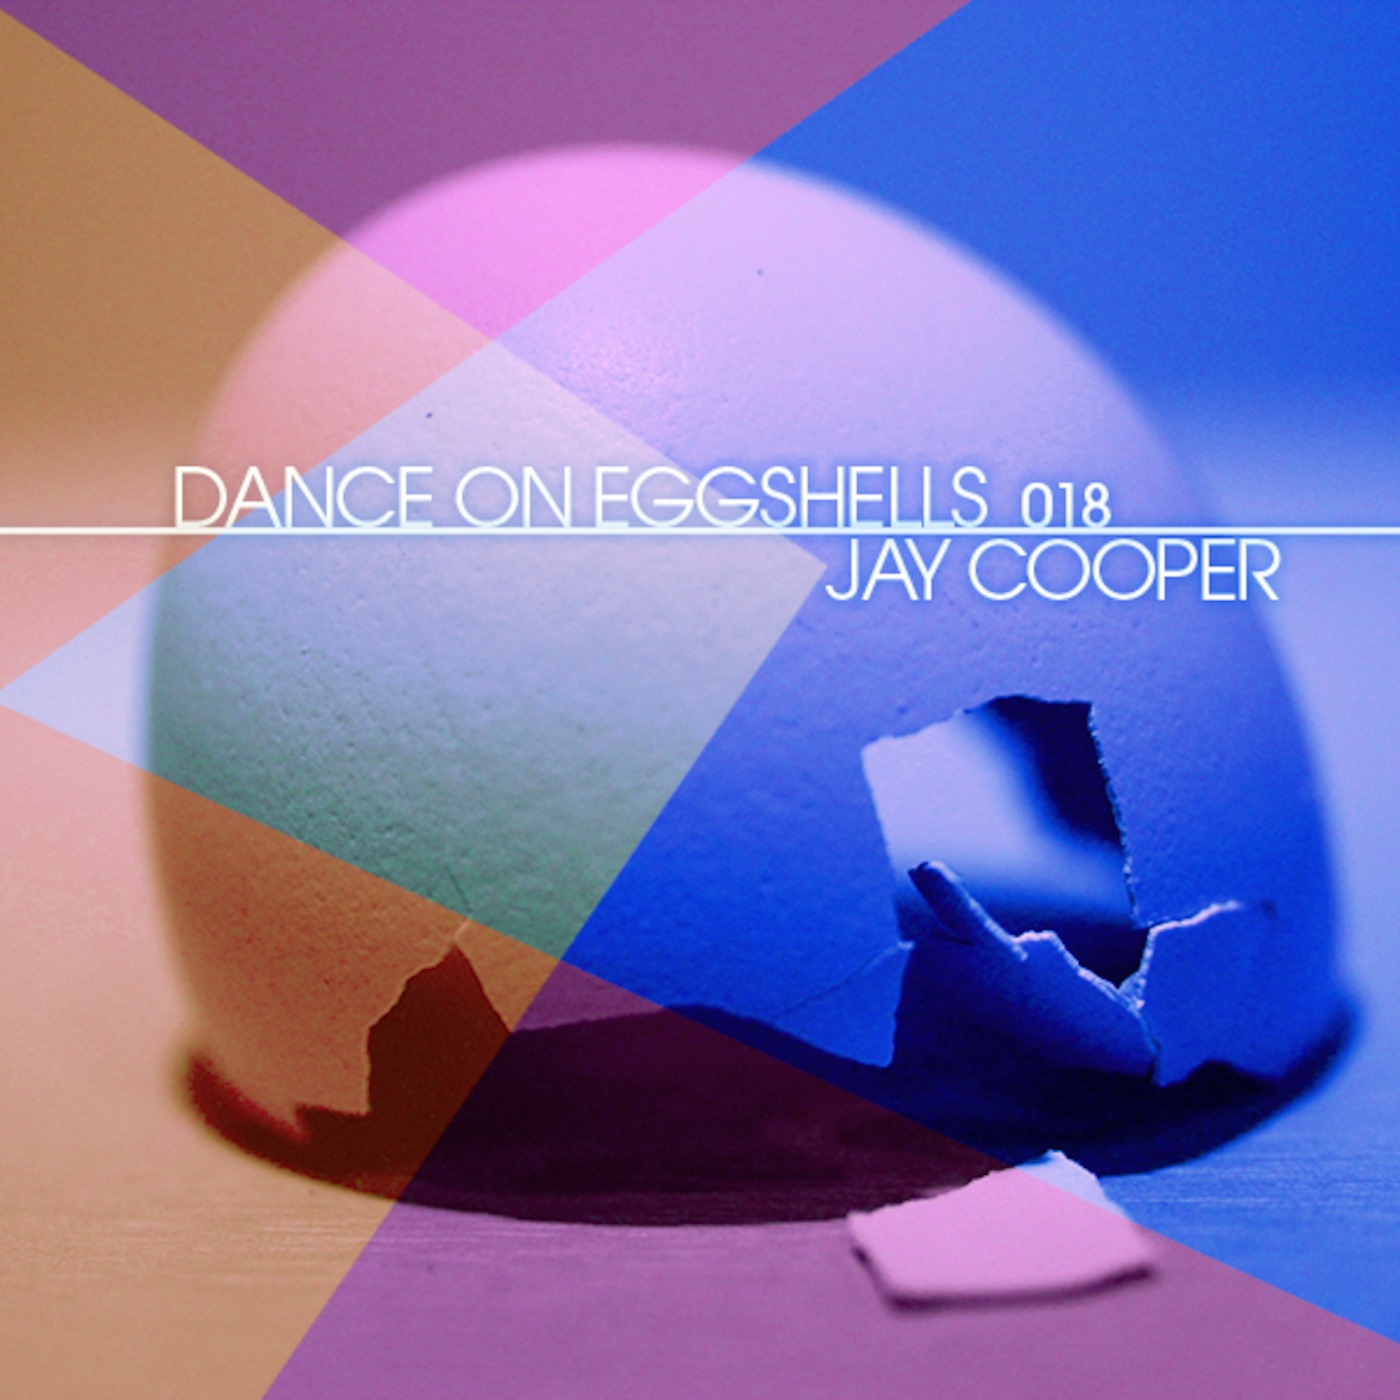 Dance On Eggshells 018 - Jay Cooper